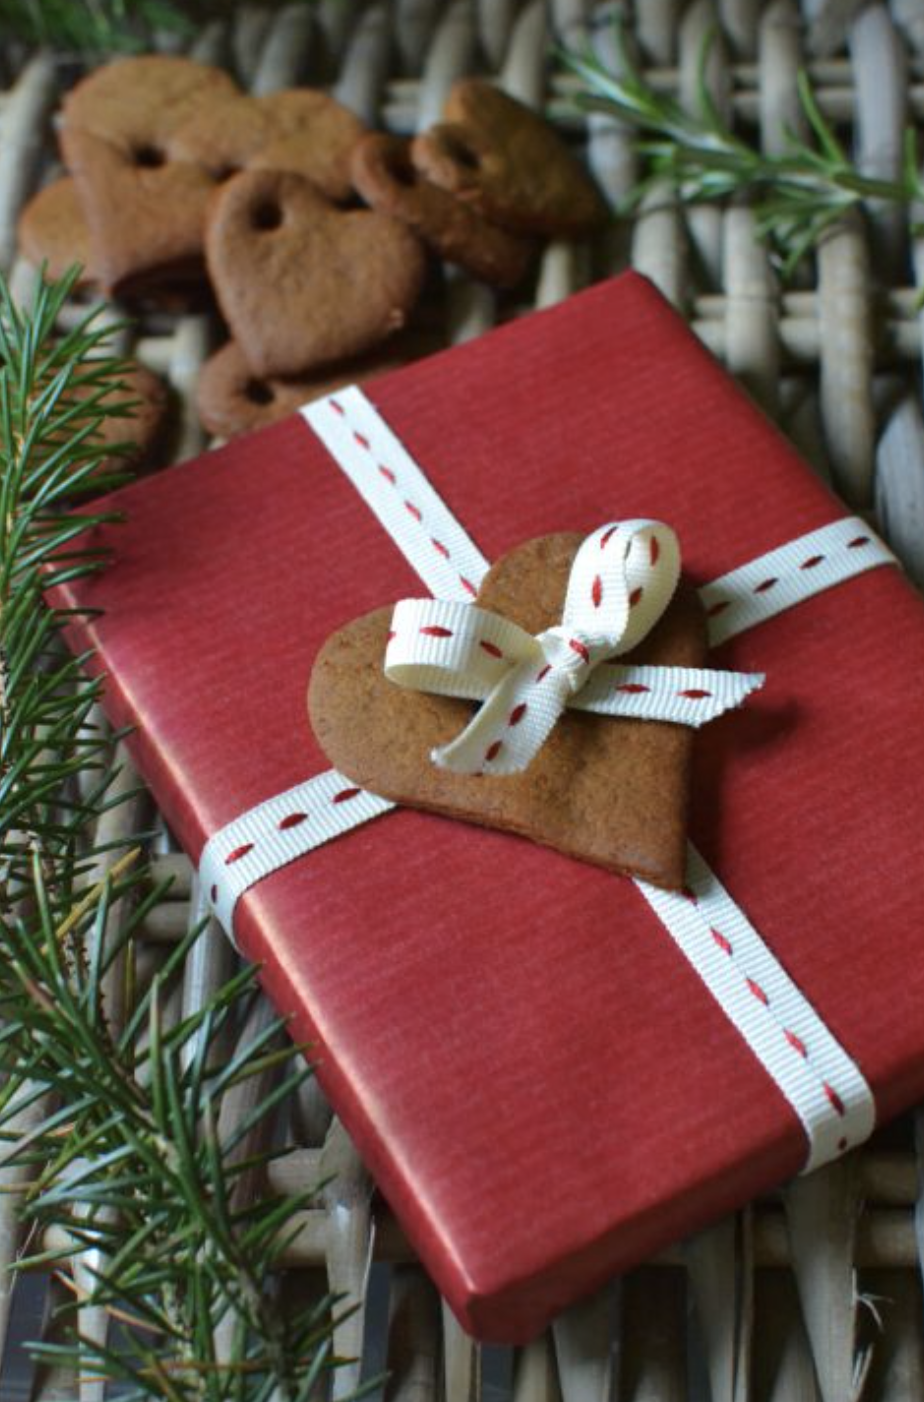 11 Ideas diferentes para envolver los regalos en Navidad - Foto 1